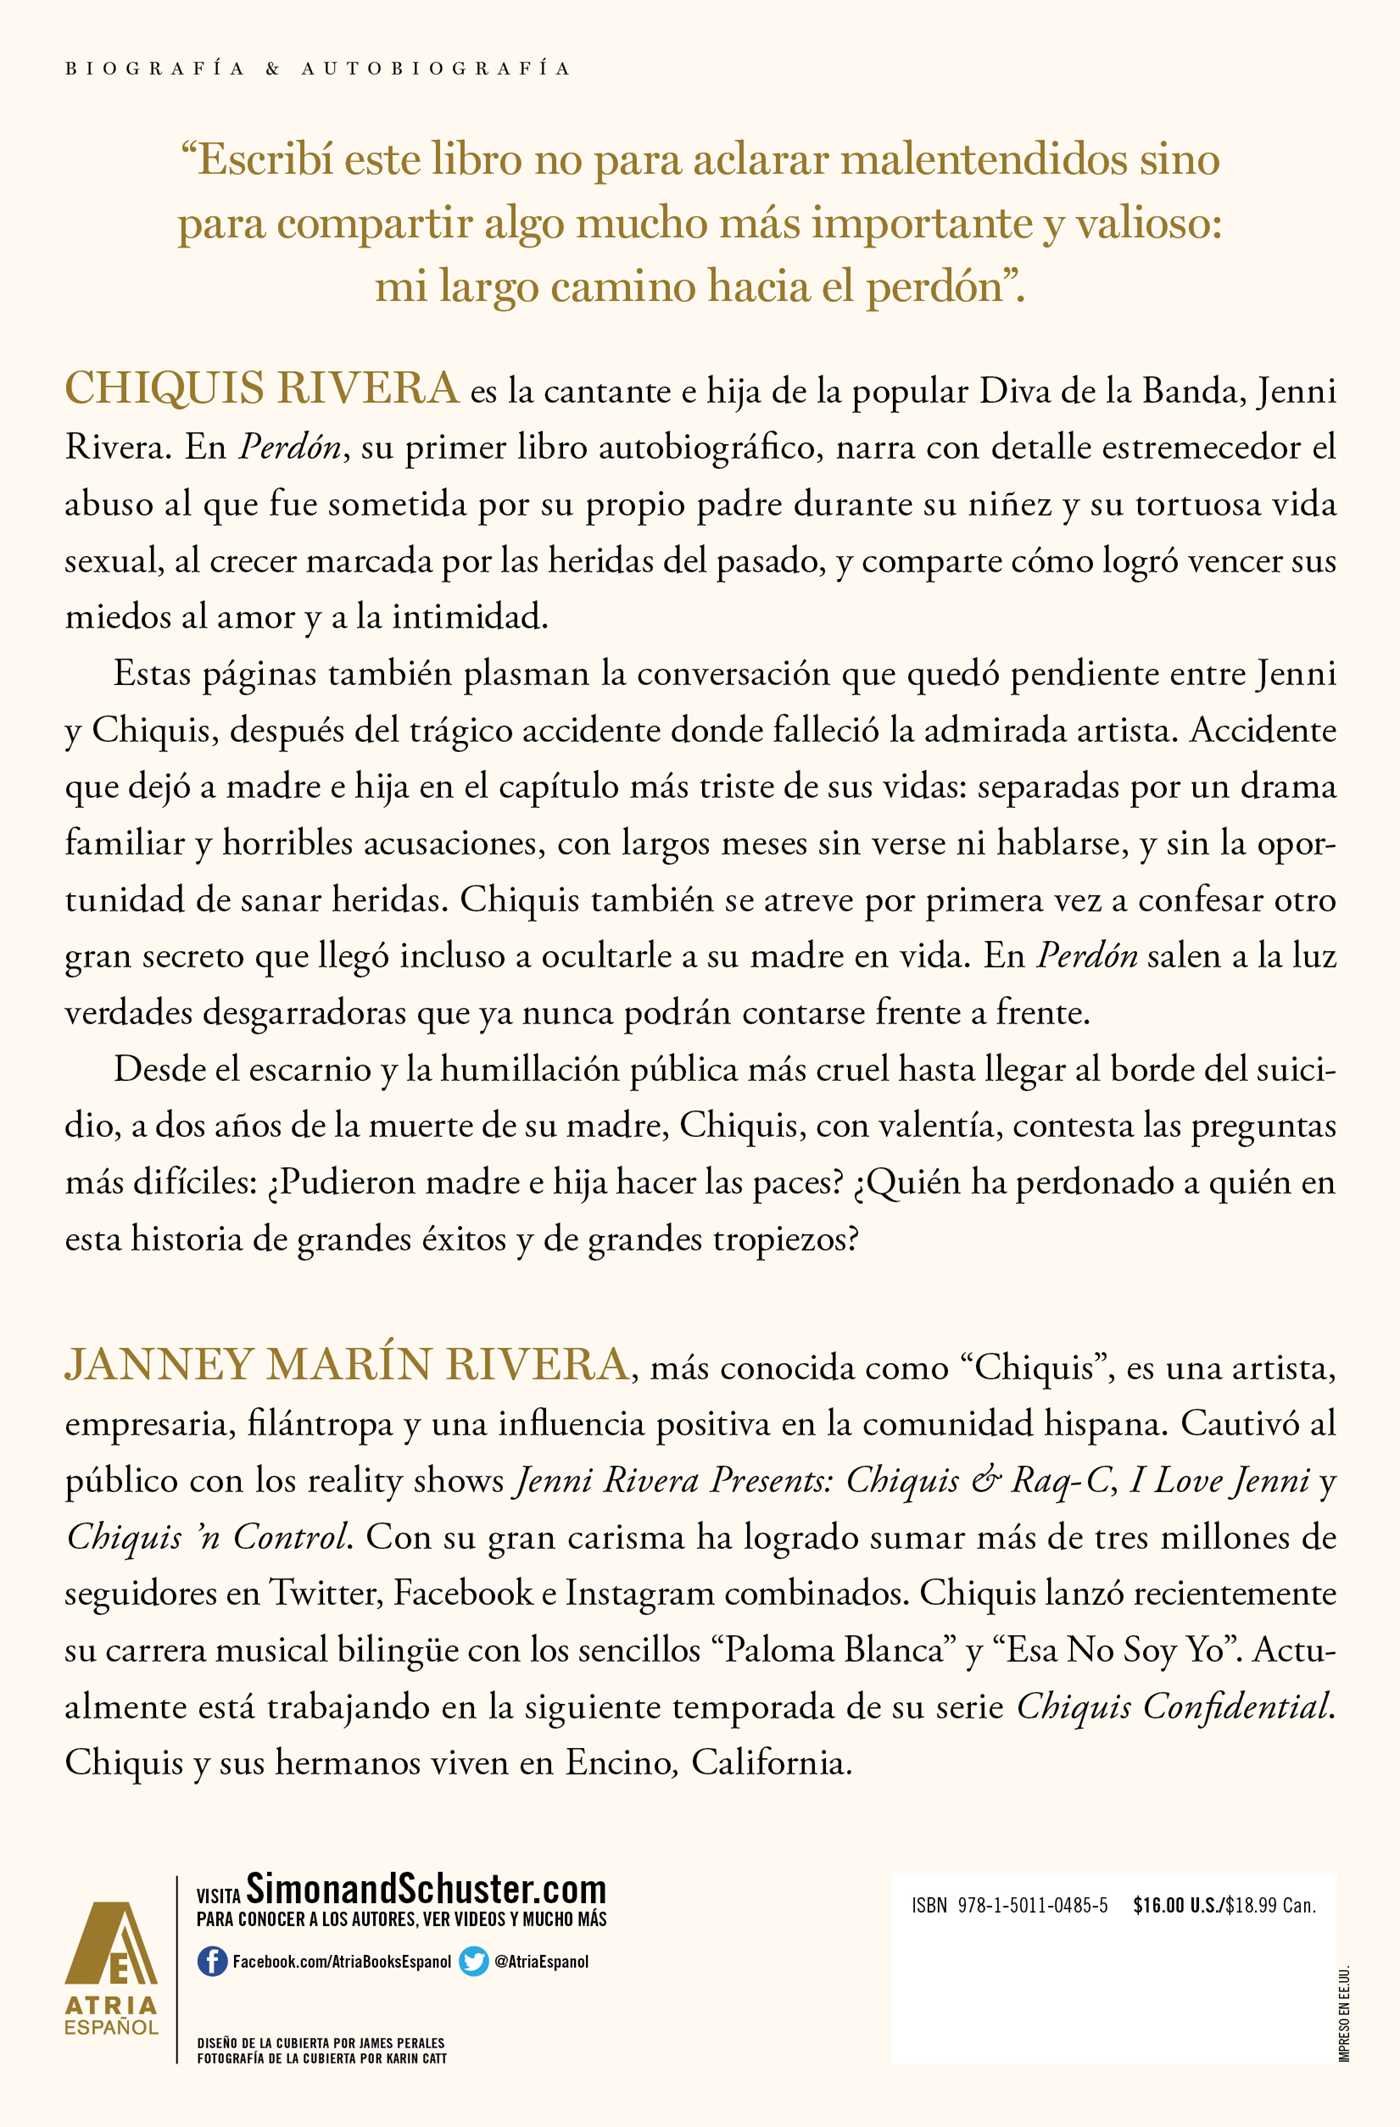 Perdón (Forgiveness Spanish edition) (Atria Espanol)